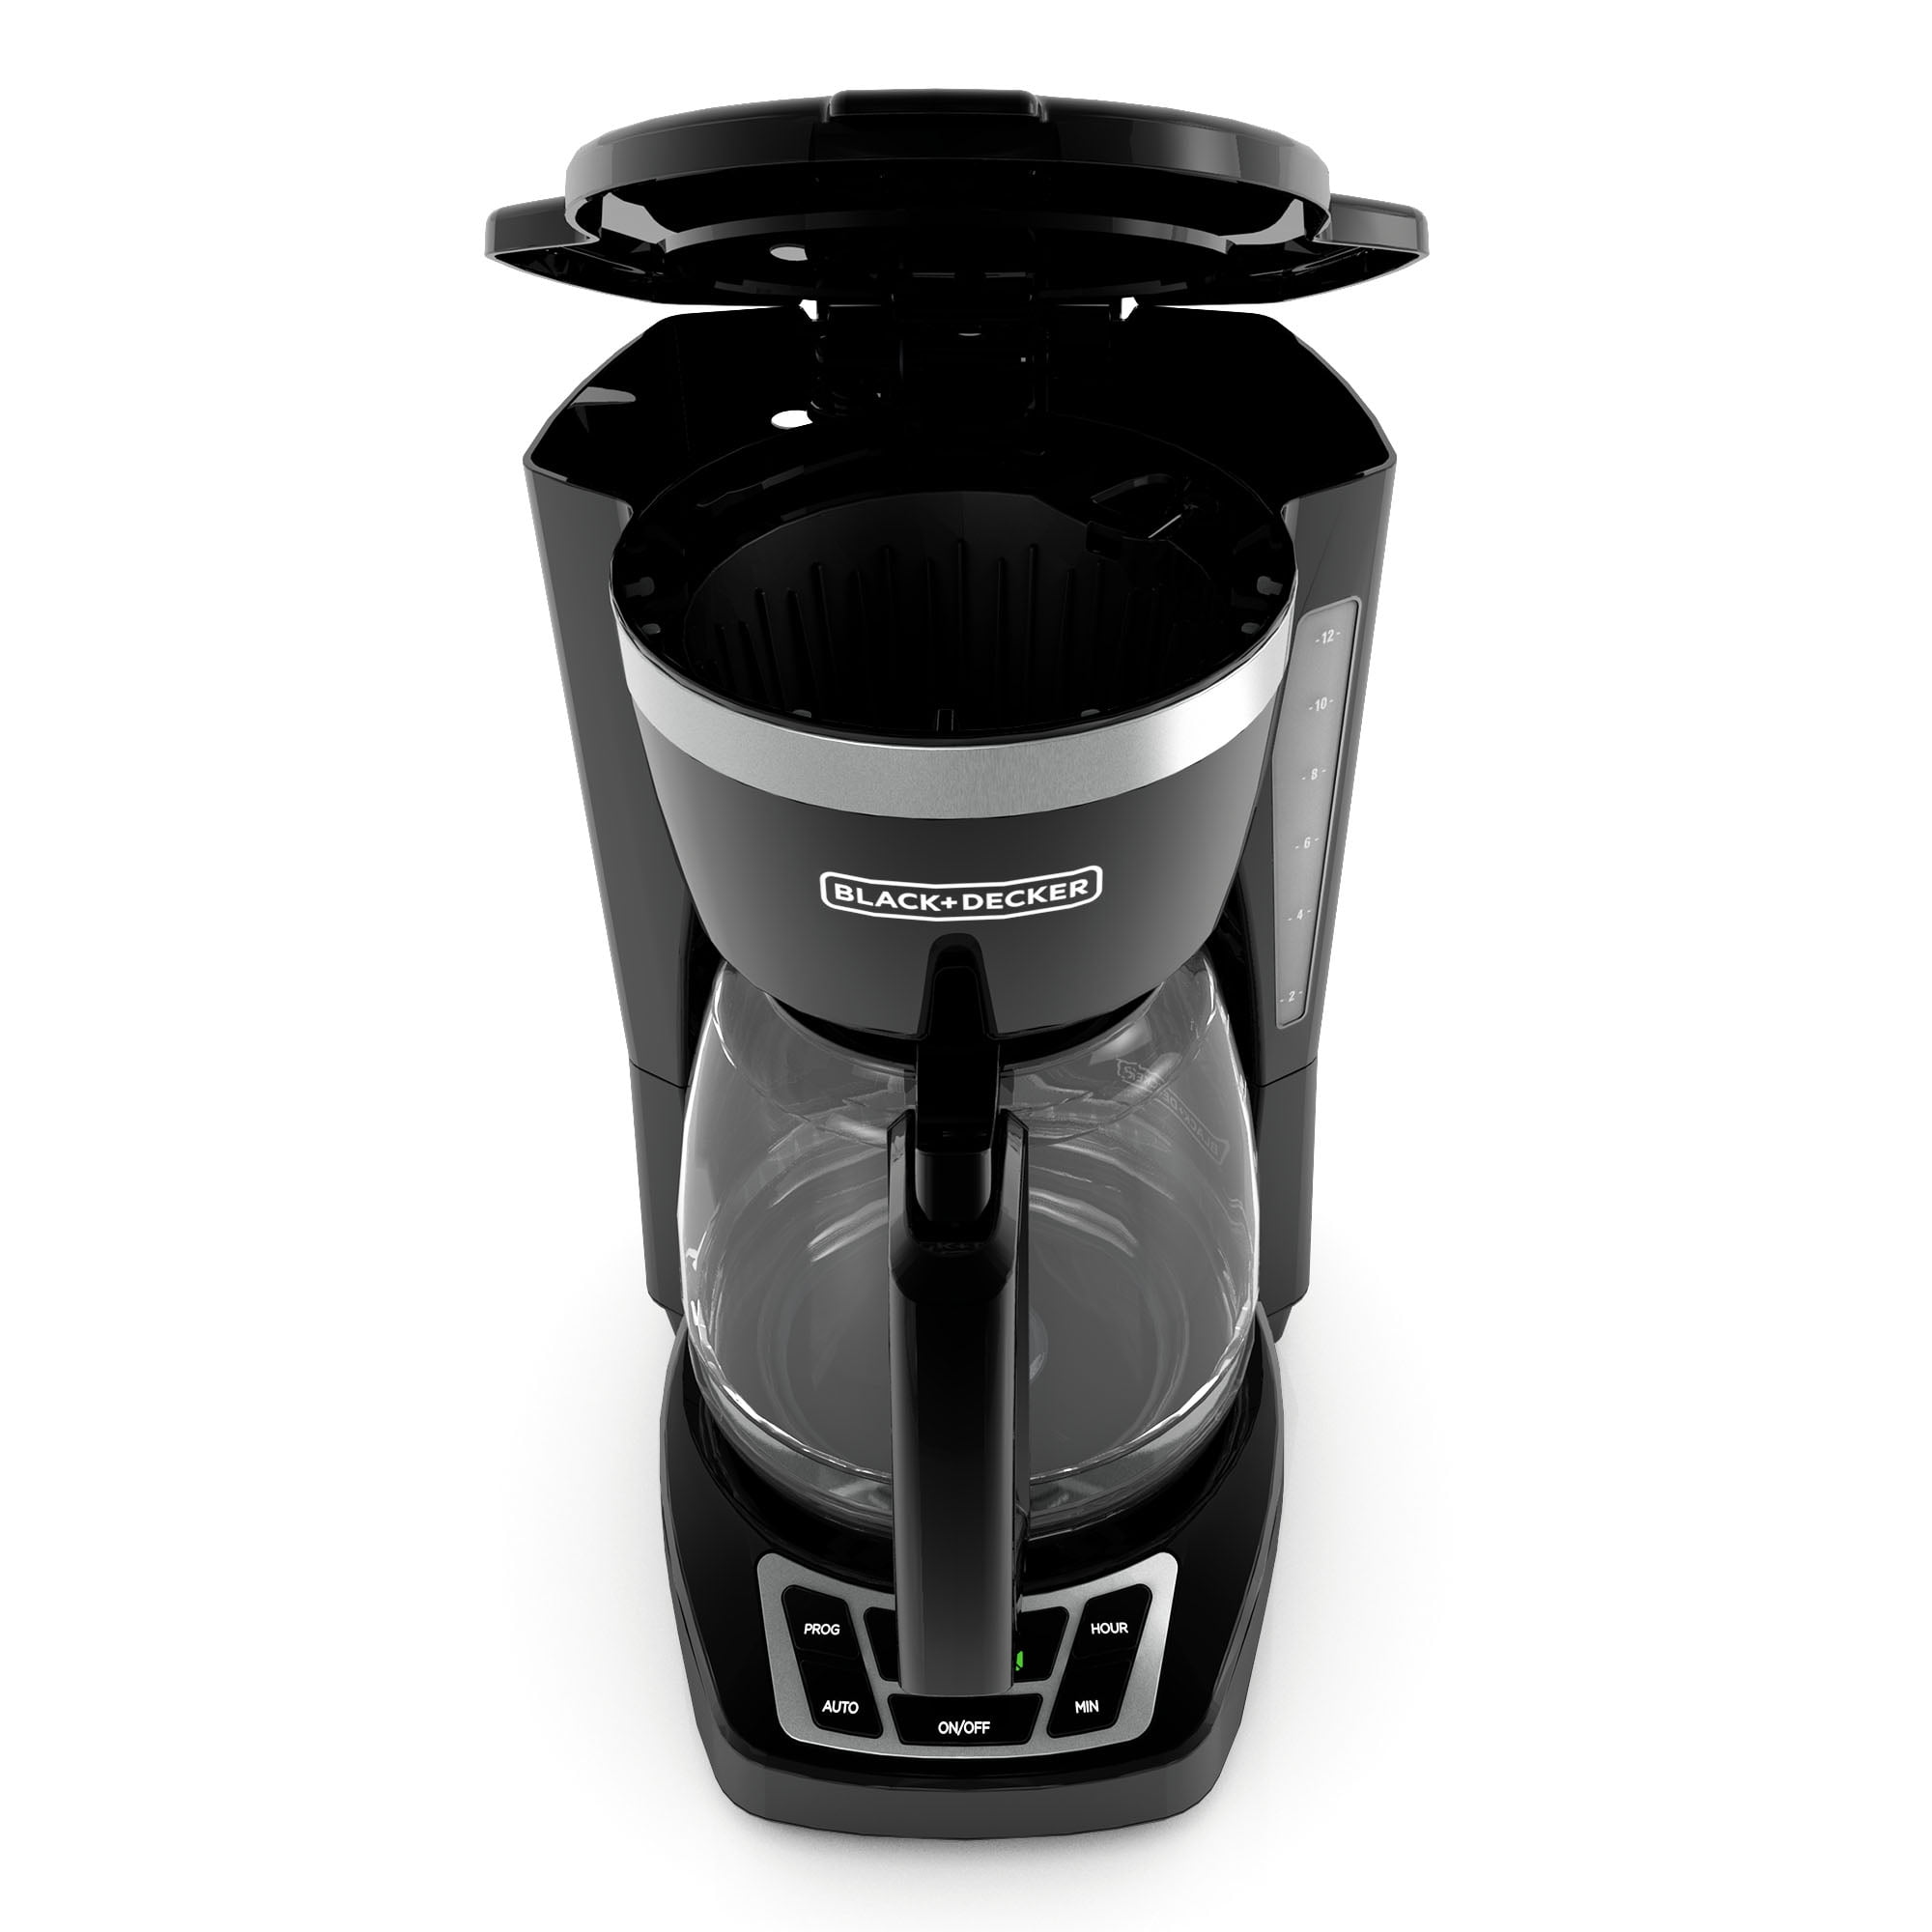 Black & Decker DCM85 220 Volt 12-Cup Programmable Coffee Maker 220V 240V  For Export